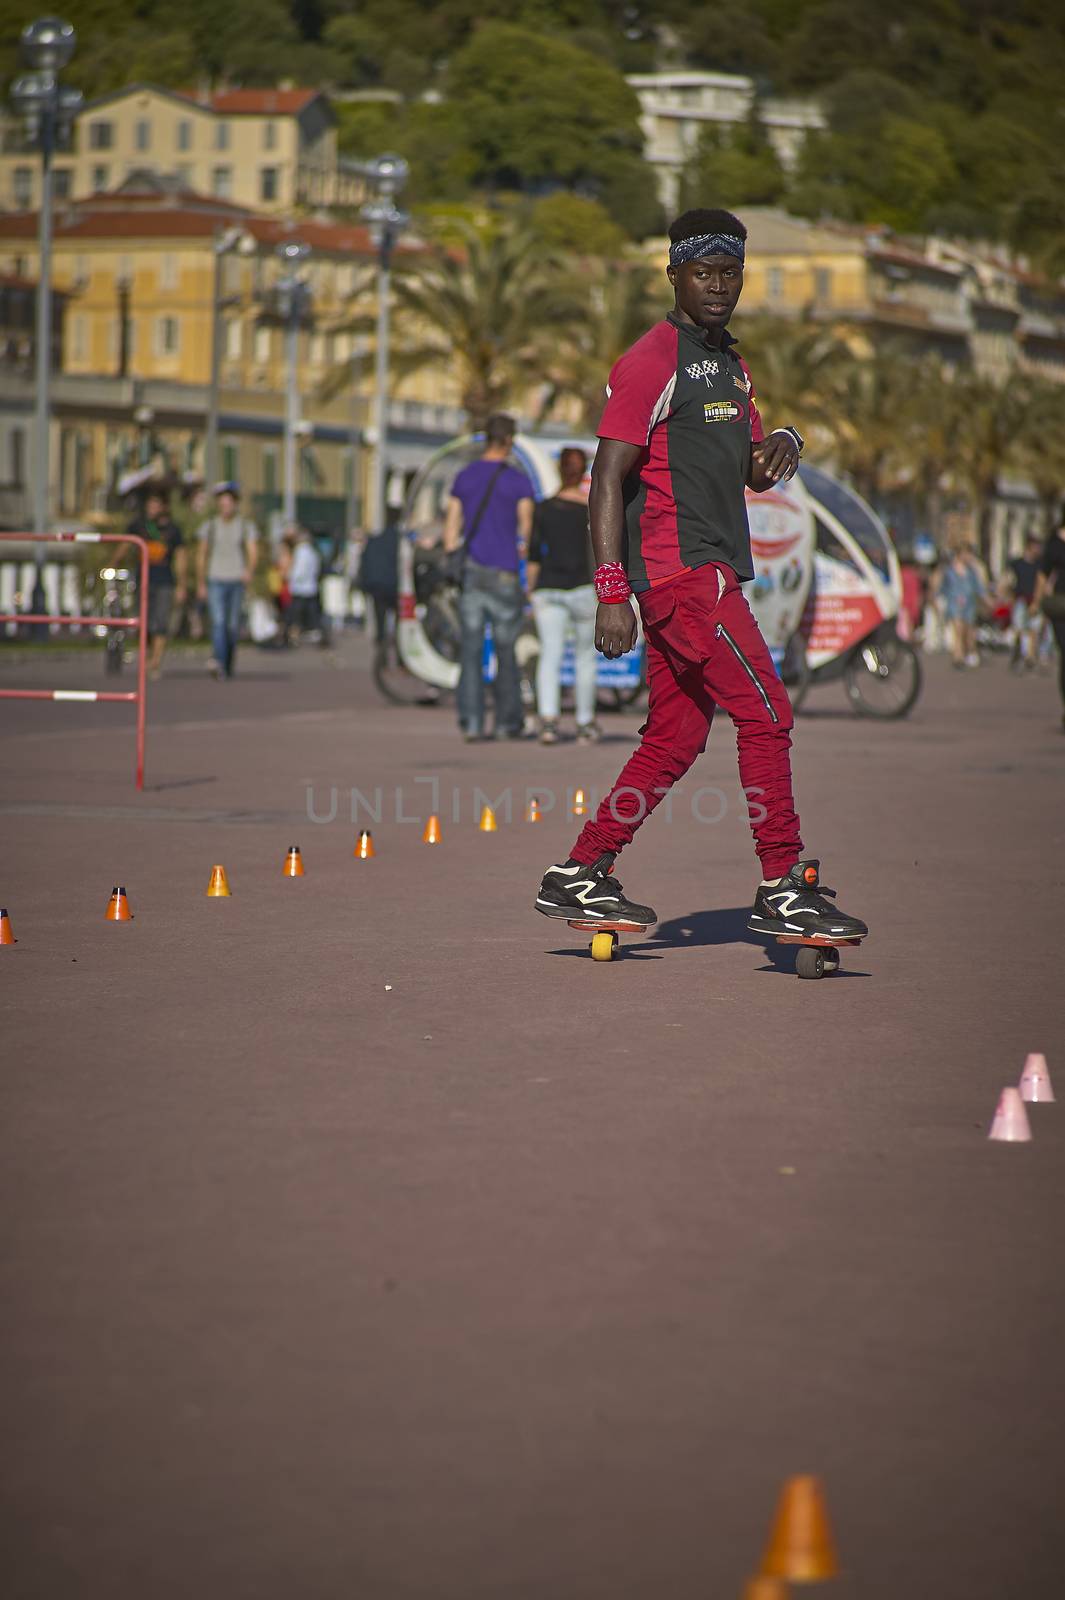 NICE, FRANCE 26 FEBRUARY 2020: Skater on the street